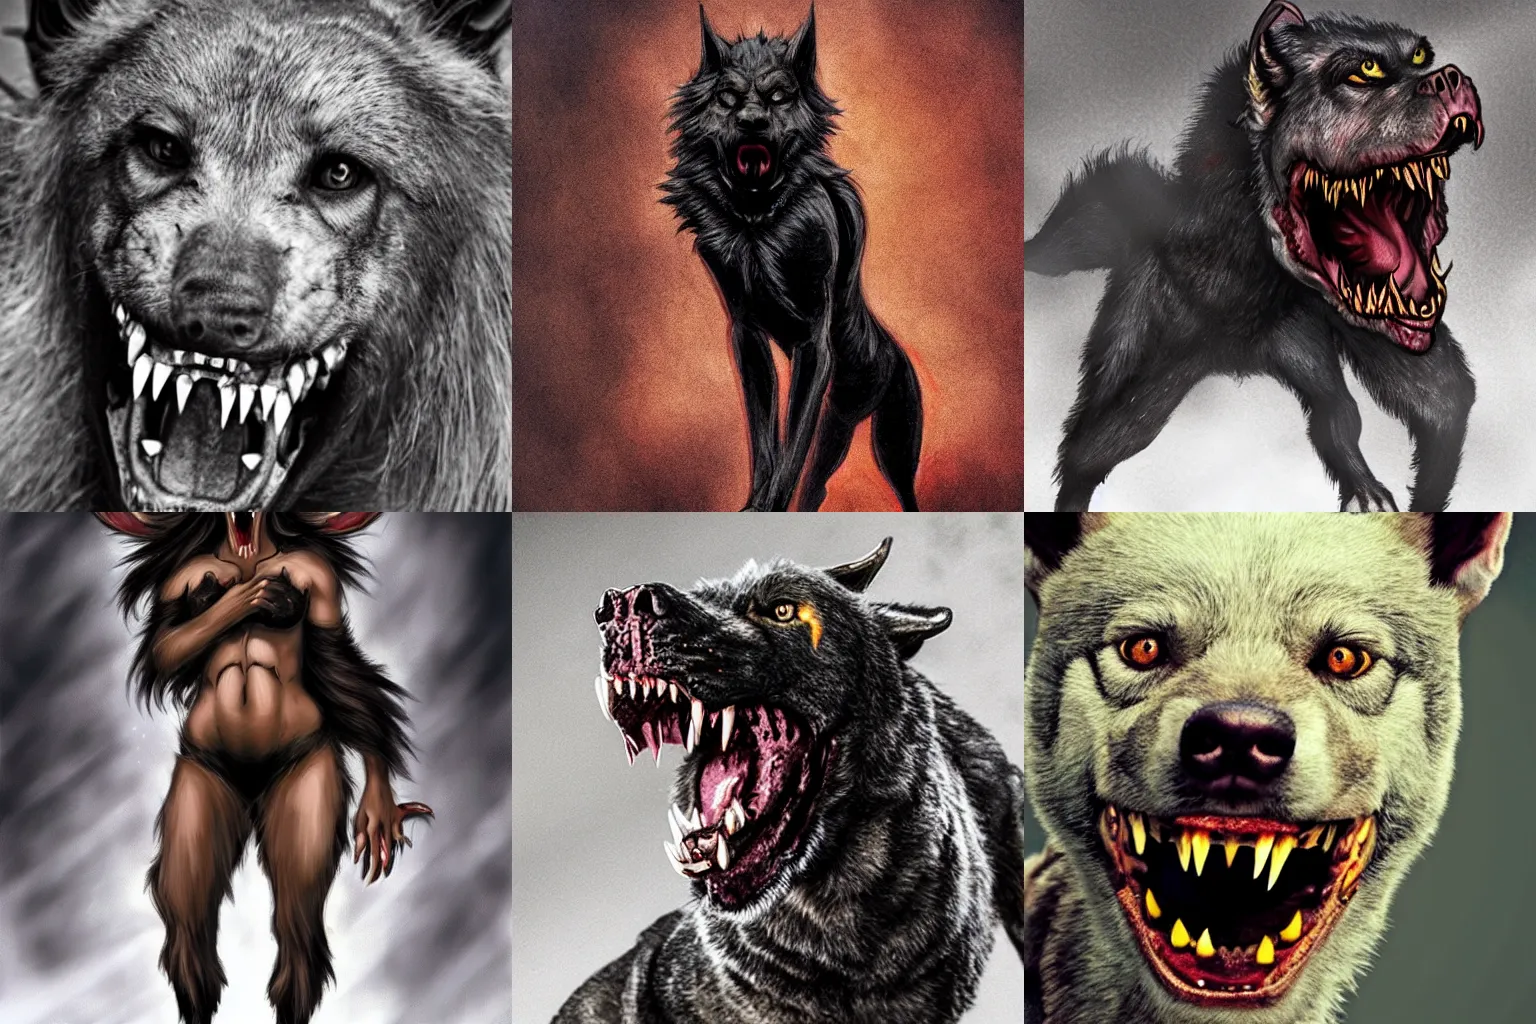 Prompt: female hellhound werewolf, fierce, sharp teeth, trending